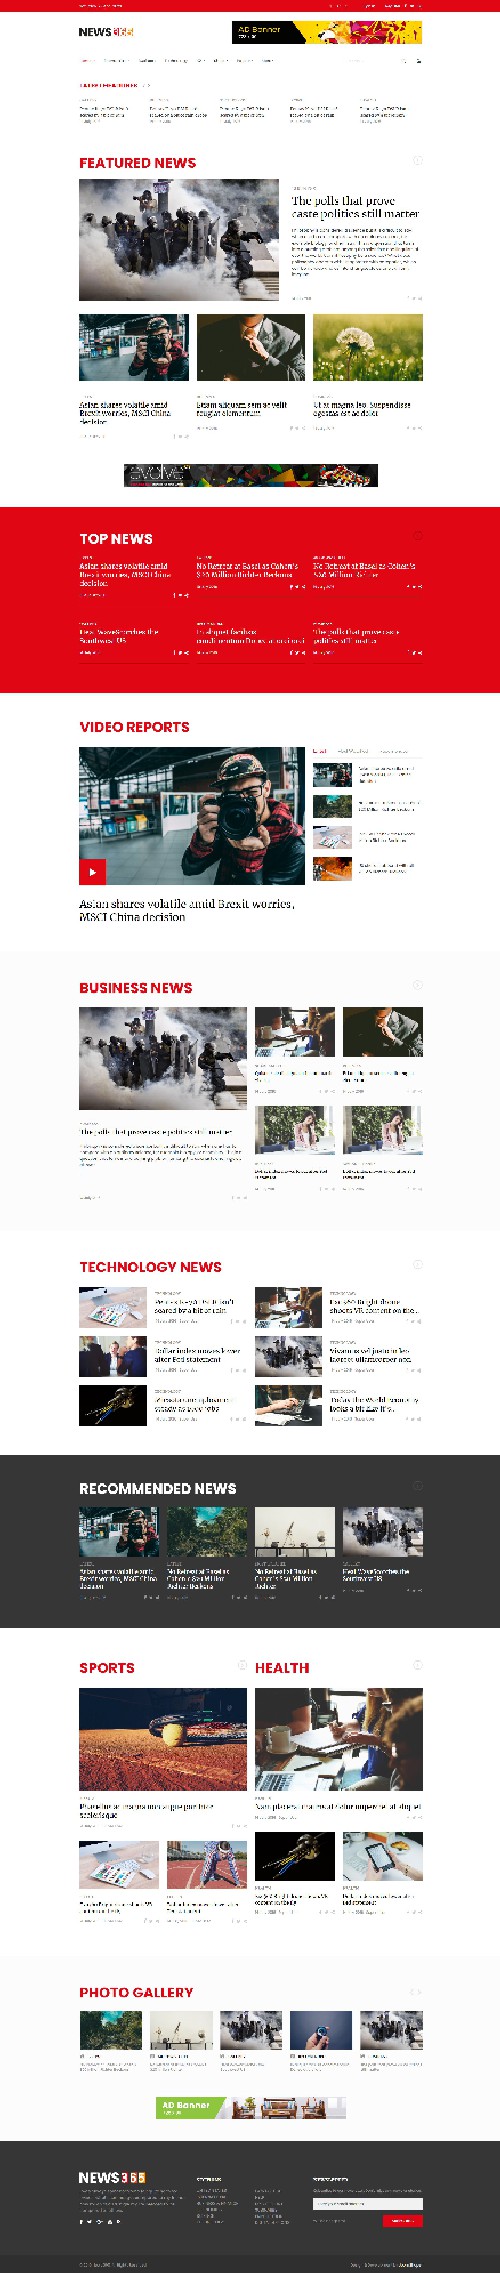 News365 - Responsive Joomla 4 Template for News/Magazine